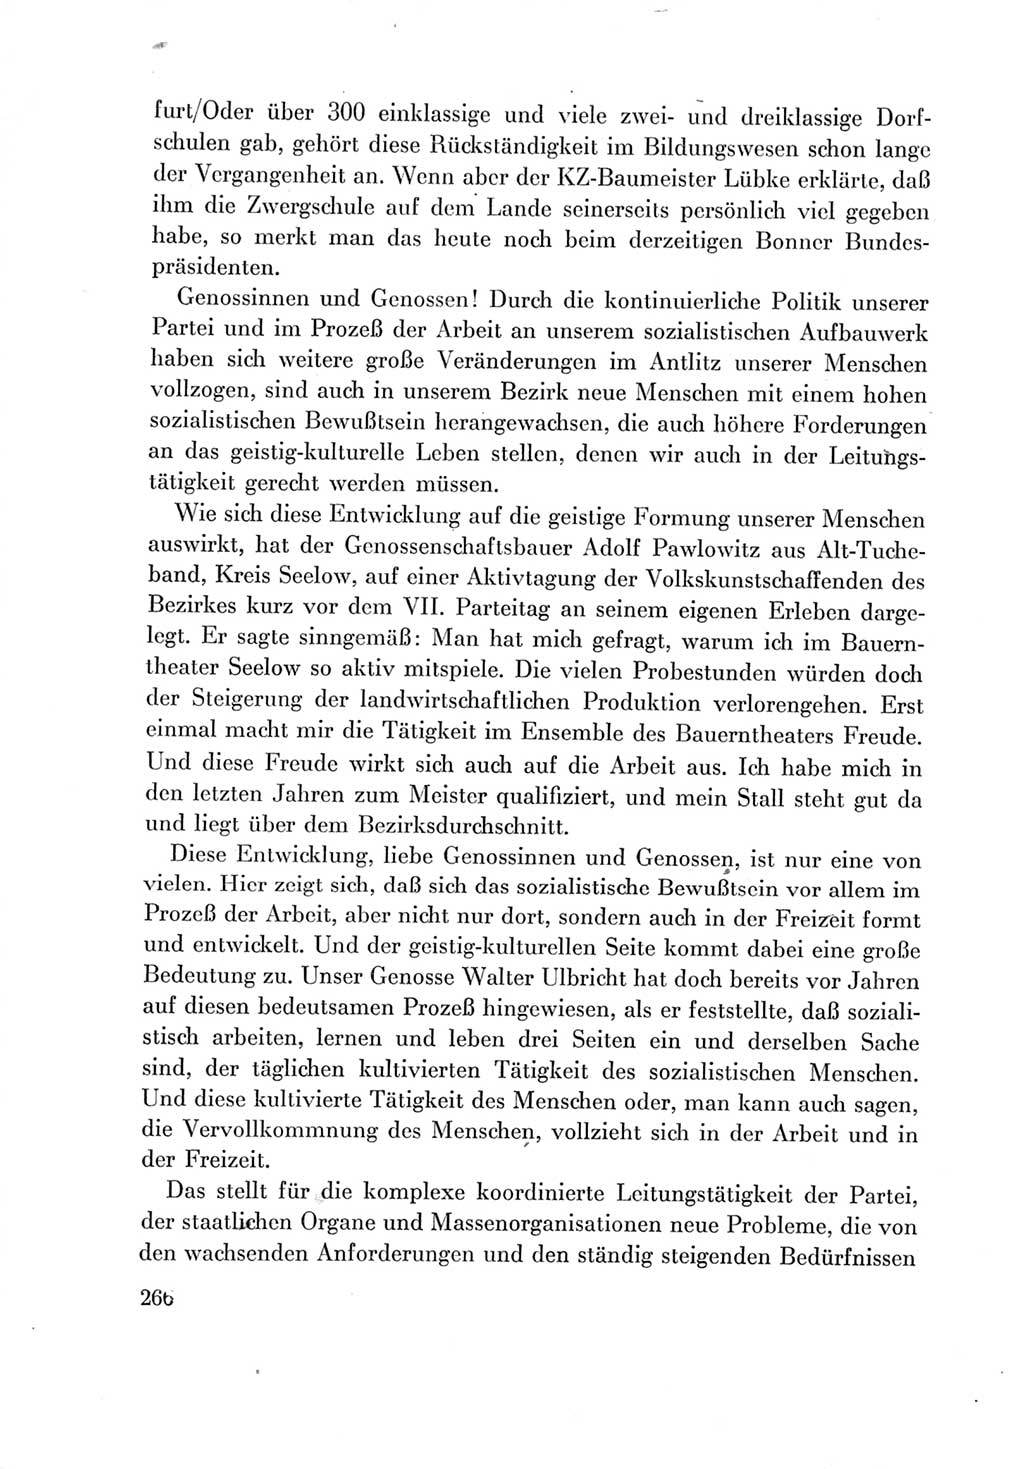 Protokoll der Verhandlungen des Ⅶ. Parteitages der Sozialistischen Einheitspartei Deutschlands (SED) [Deutsche Demokratische Republik (DDR)] 1967, Band Ⅲ, Seite 266 (Prot. Verh. Ⅶ. PT SED DDR 1967, Bd. Ⅲ, S. 266)